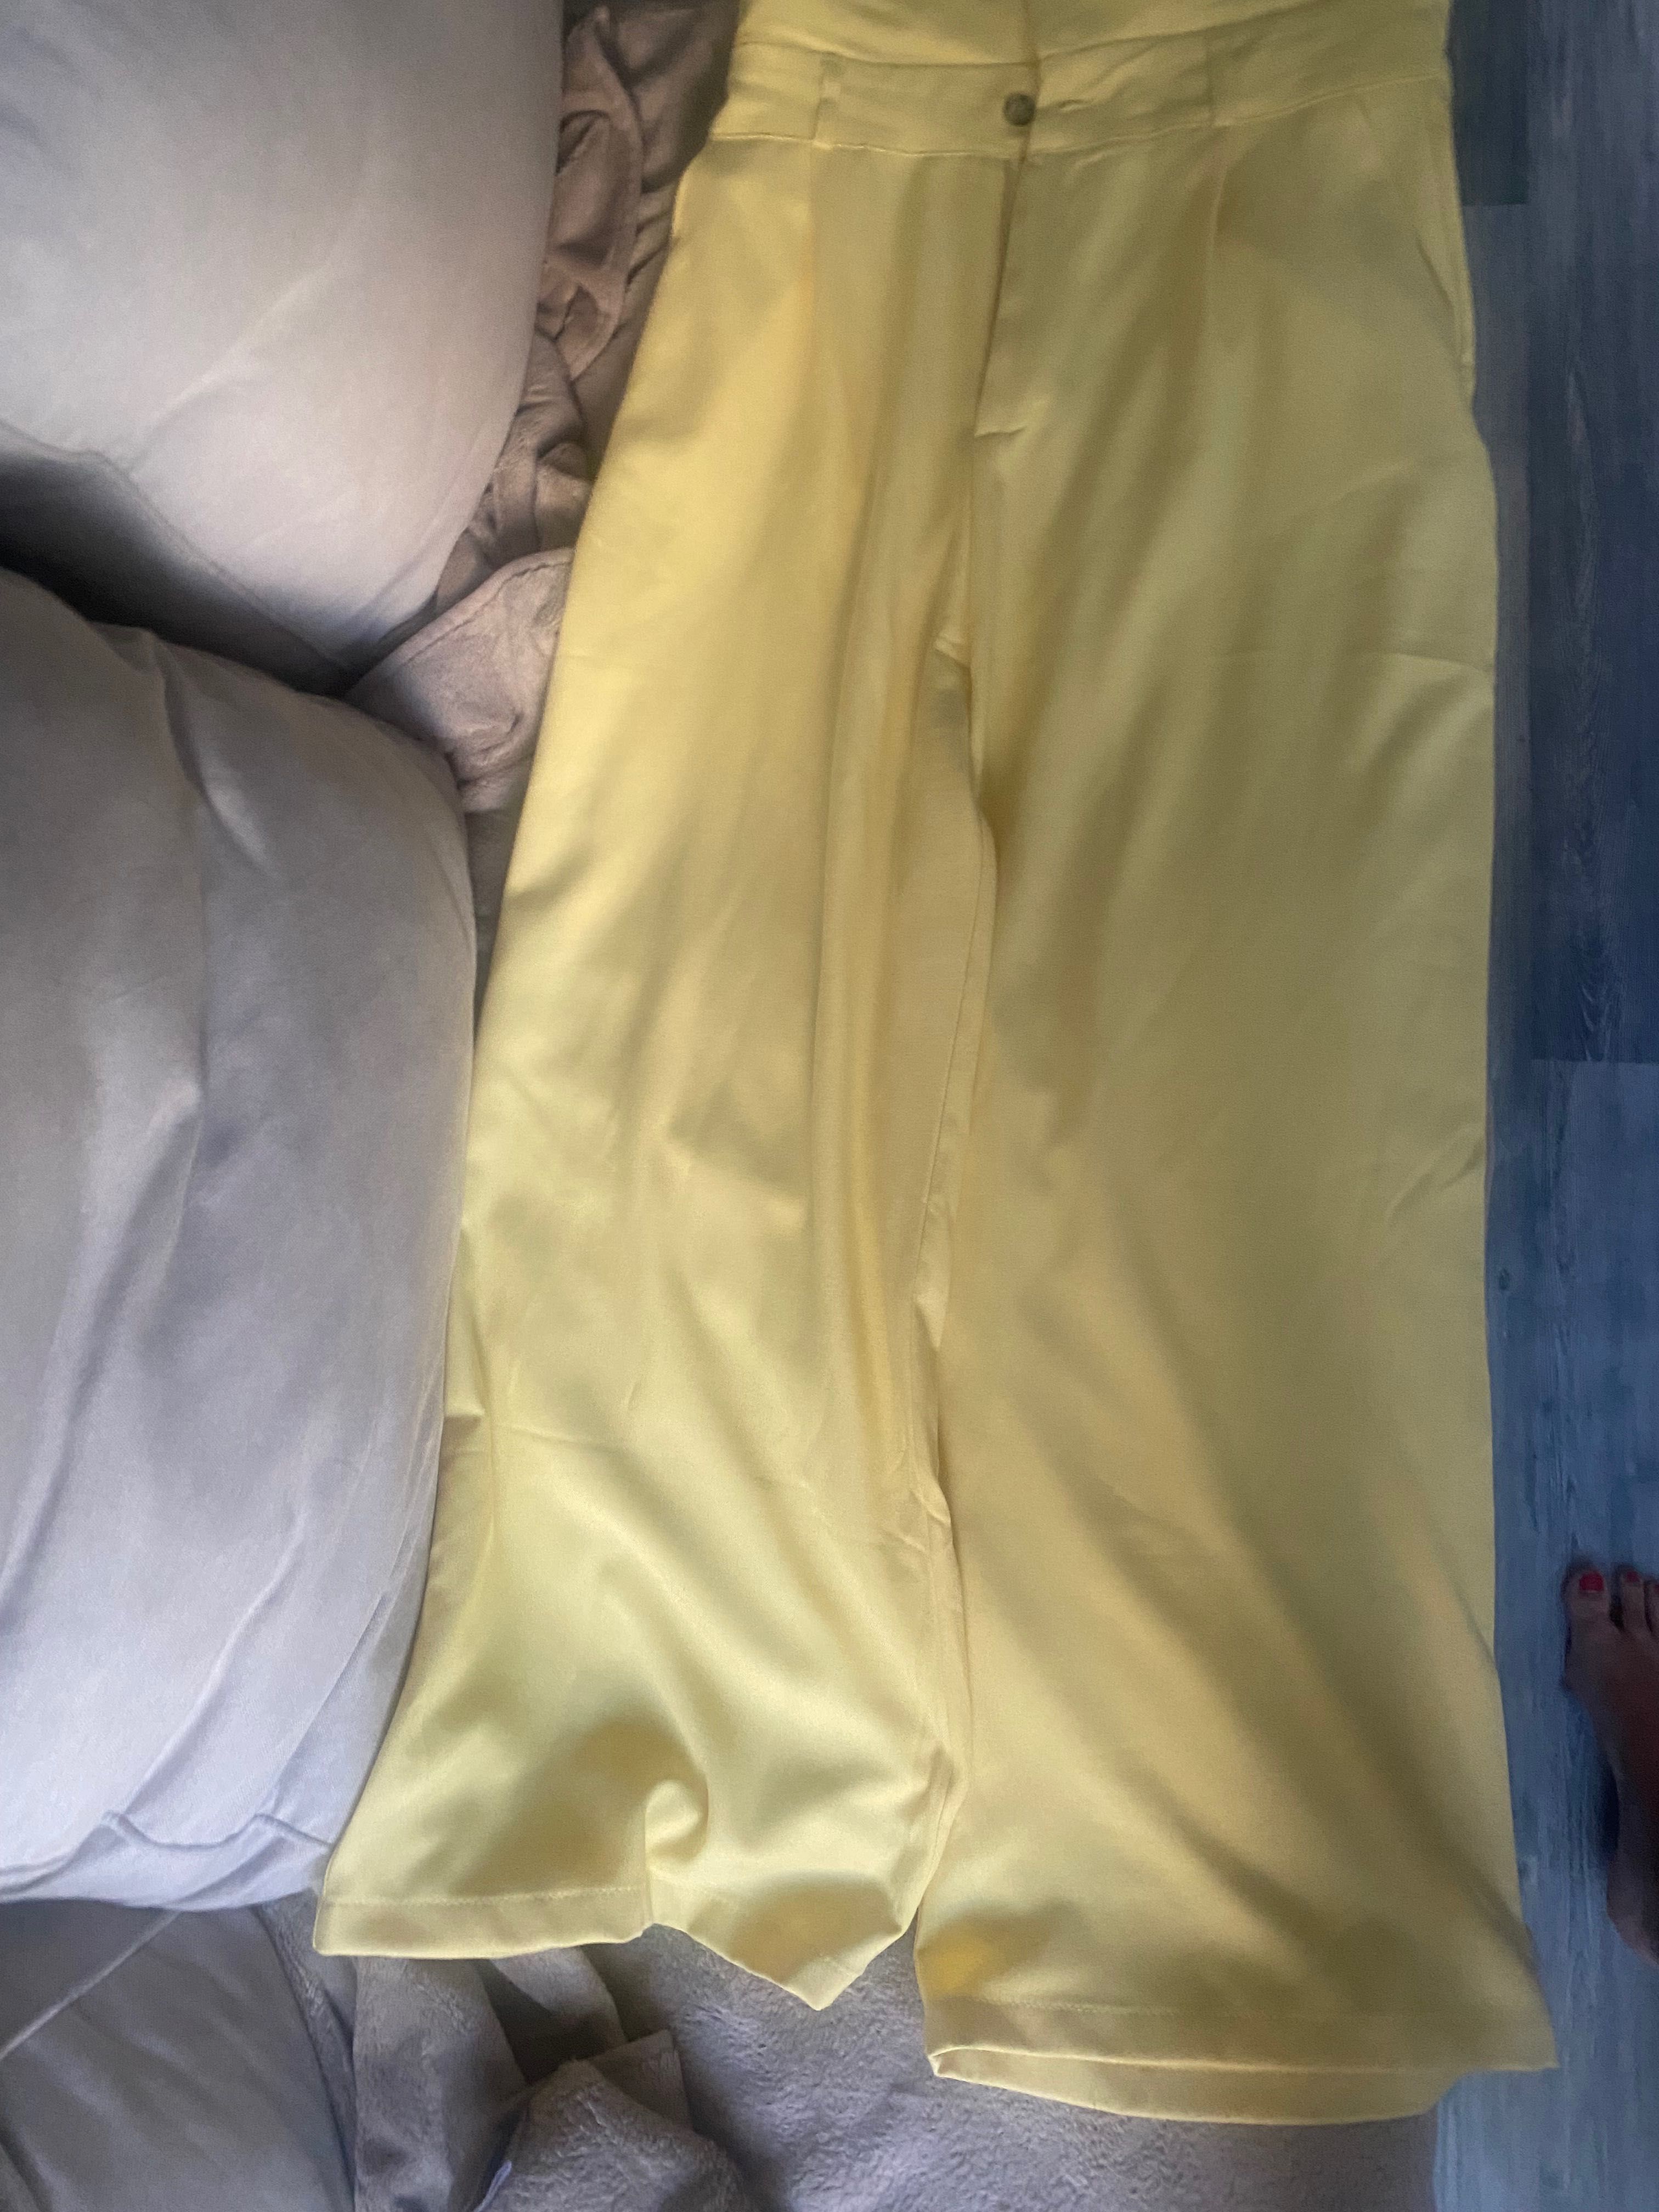 Летен жълт панталон от бутик Karma ПРОМО до 20.05